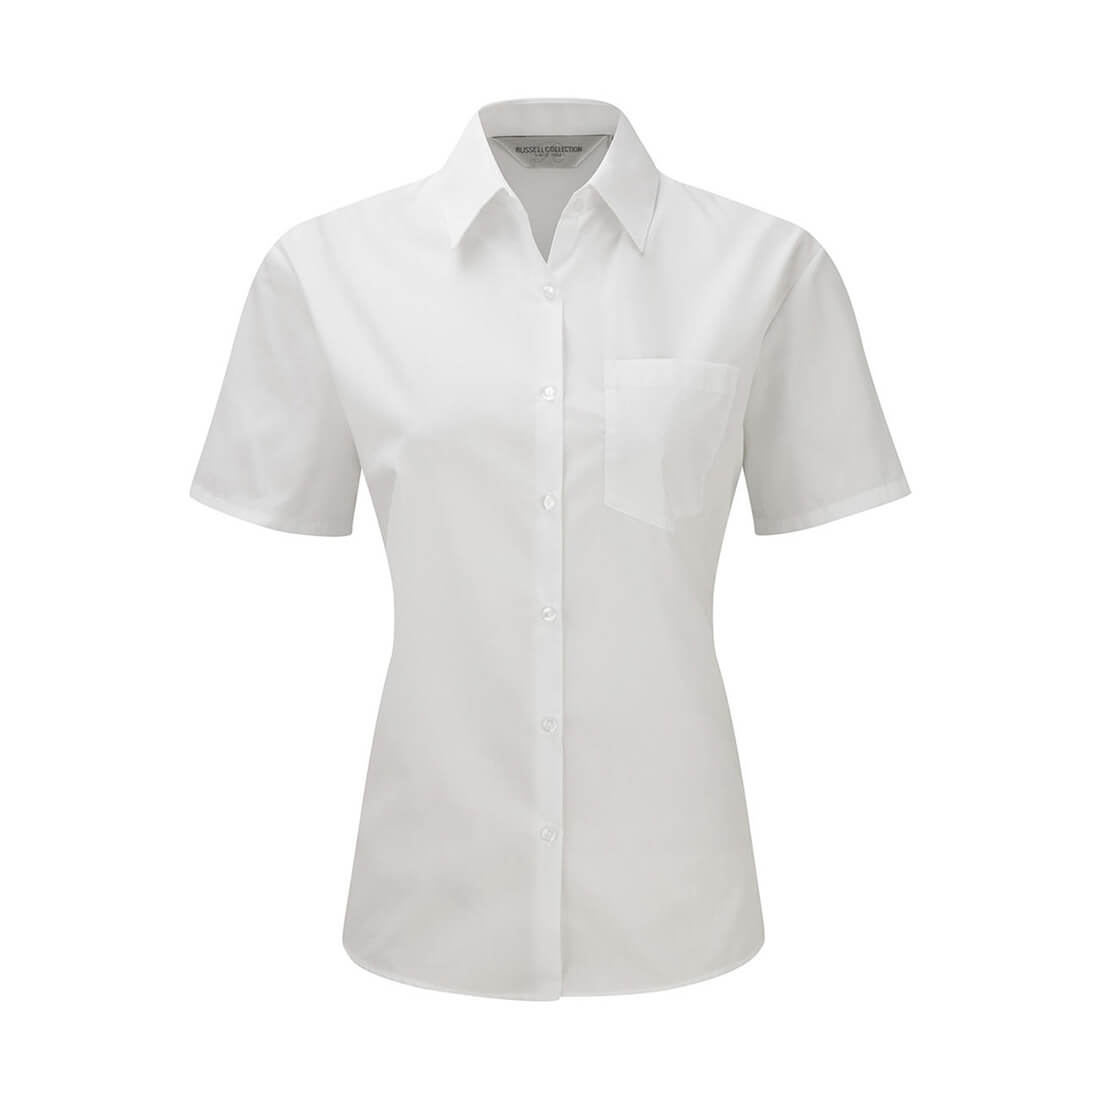 Camisa popelin manga corta - Ropa de protección